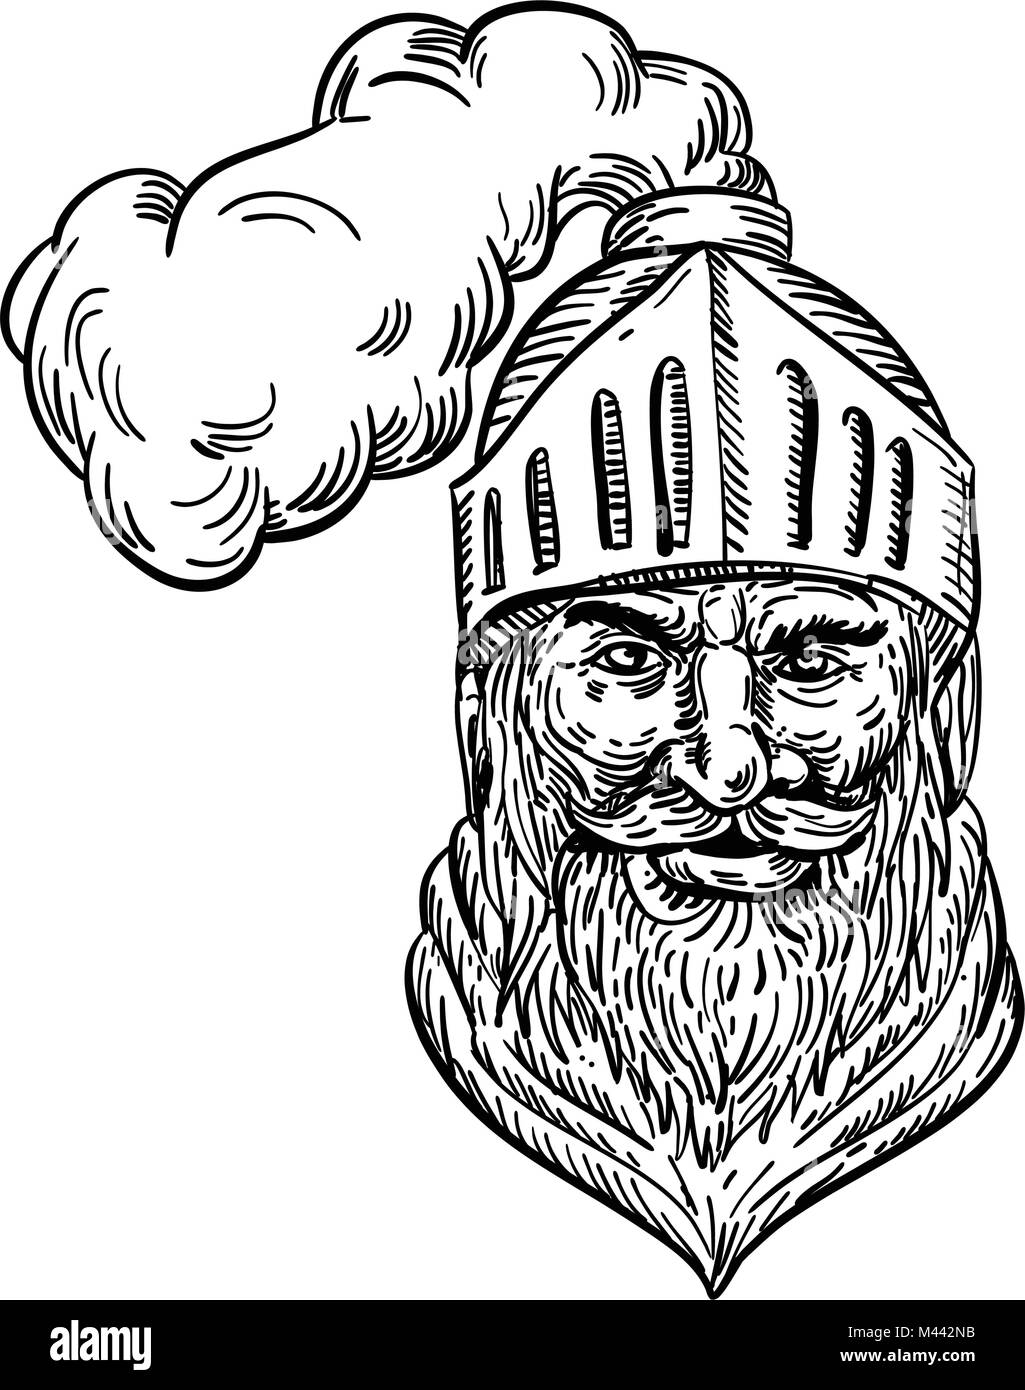 Croquis dessin illustration de style d'un vieux soldat médiéval chevalier, guerrier, chevalier, cavalier ou viwed la tête avec casque de l'avant fait dans un noir Illustration de Vecteur